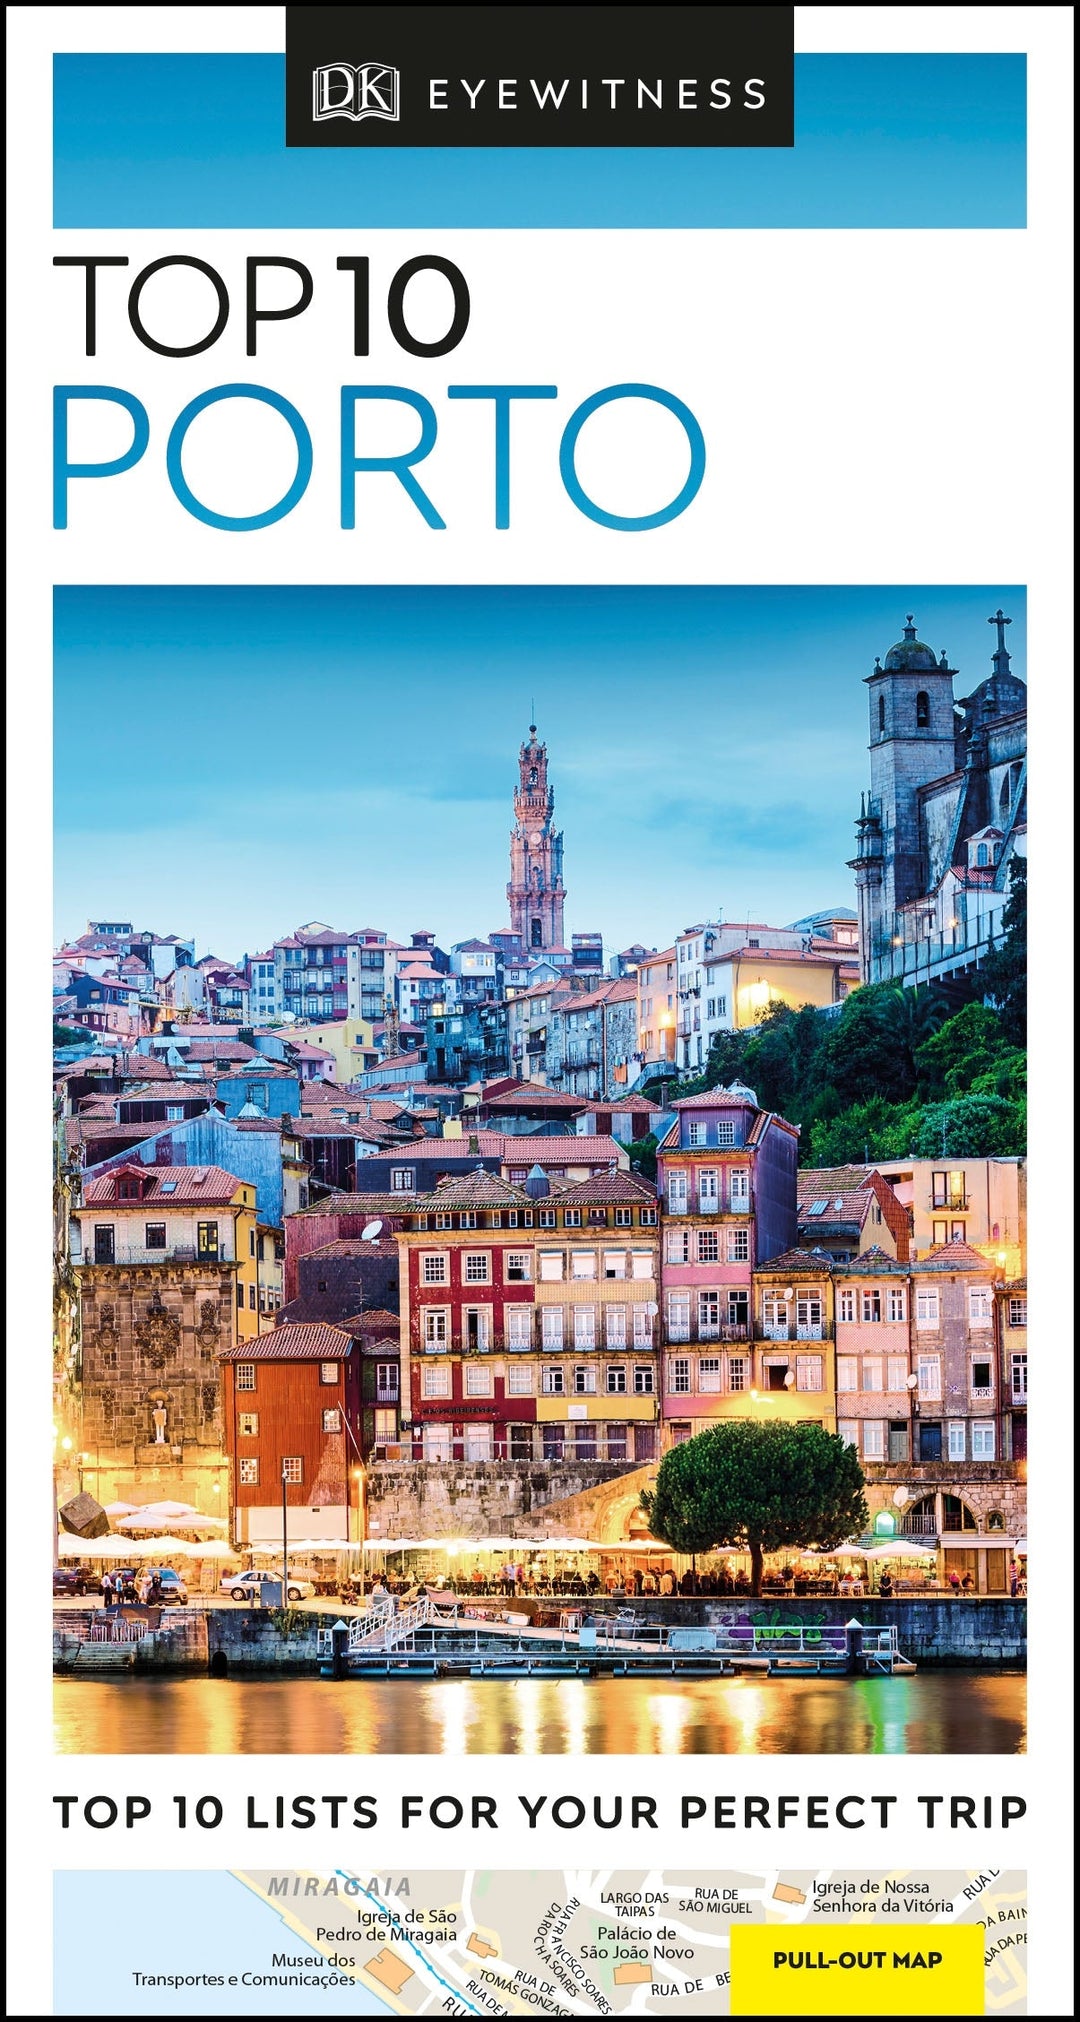 Guide de voyage (en anglais) - Porto Top 10 | Eyewitness guide de voyage Eyewitness 